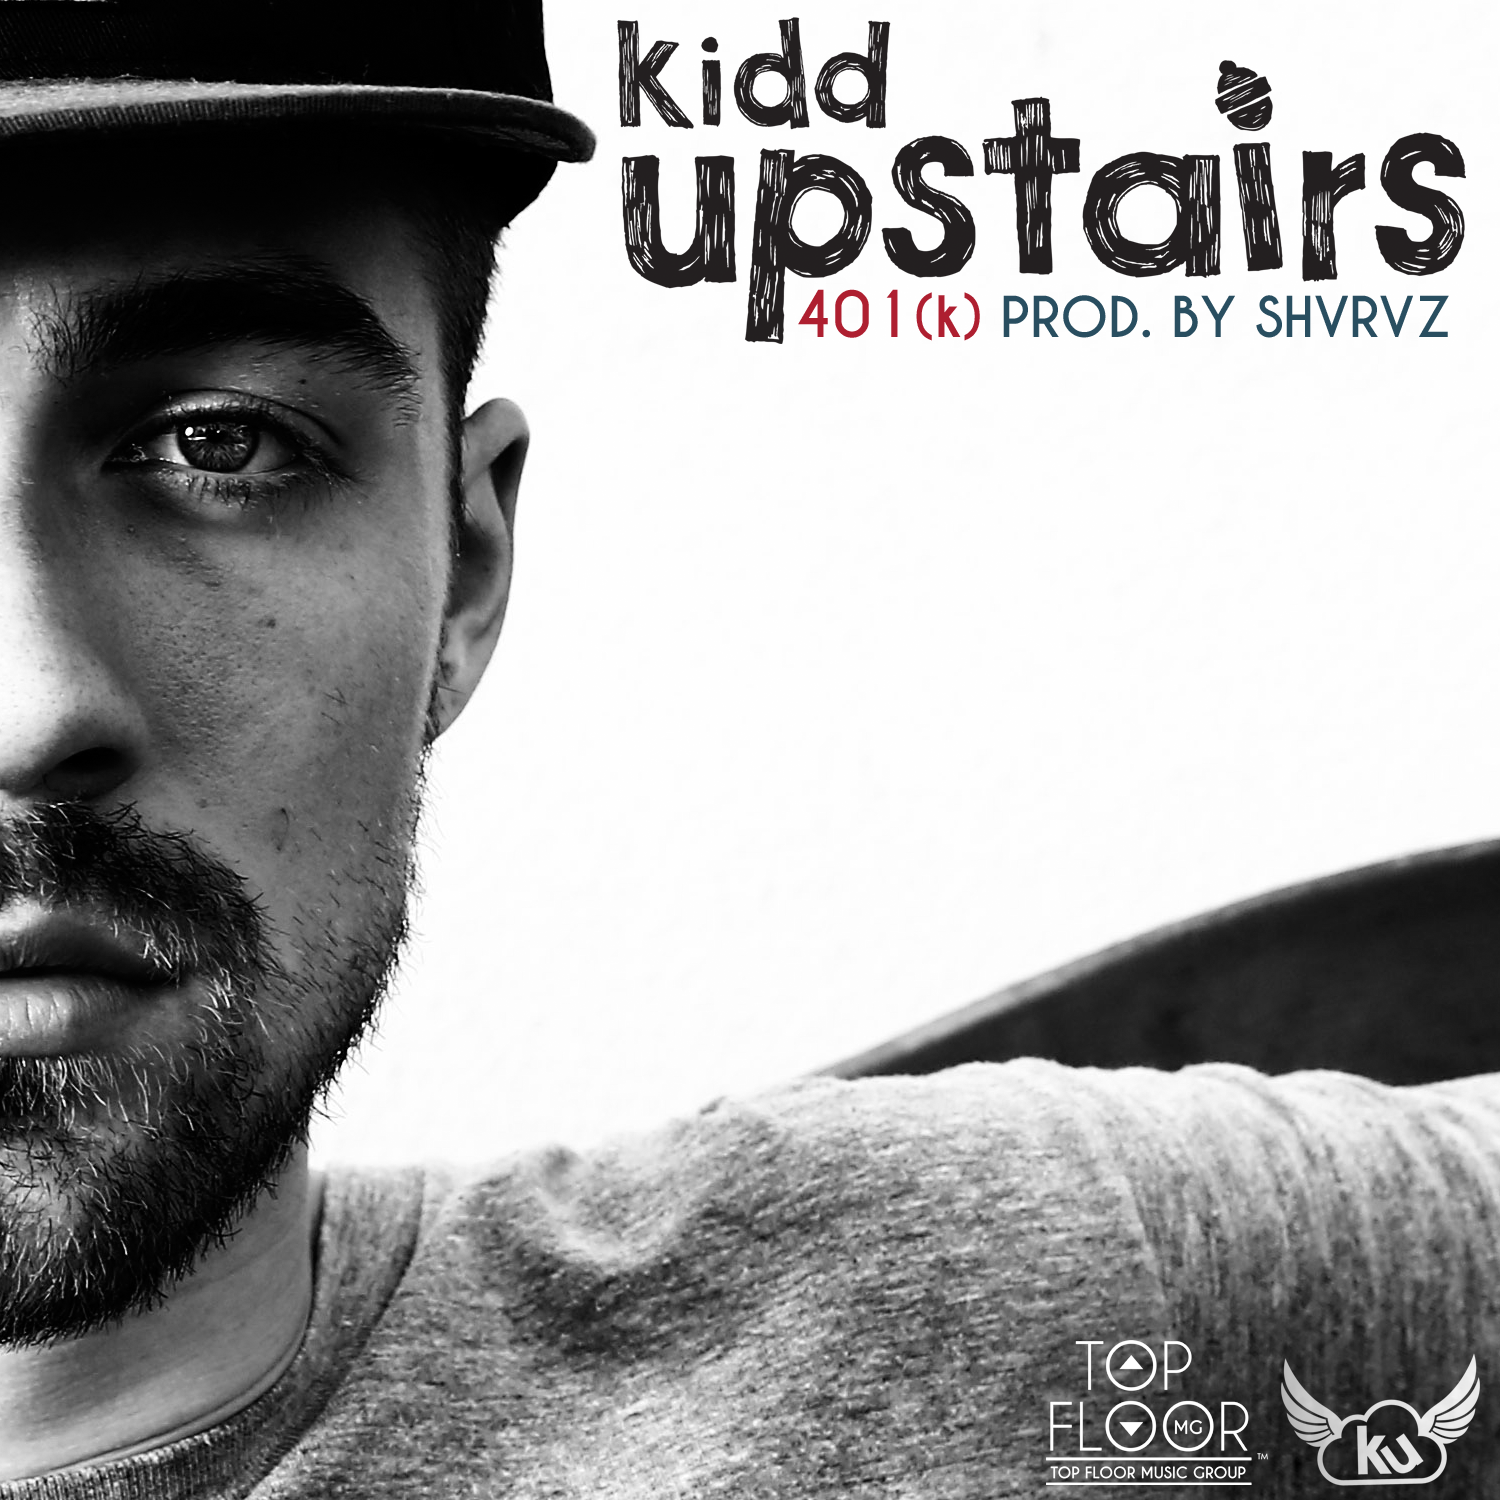 Kidd Upstairs – 401(k)